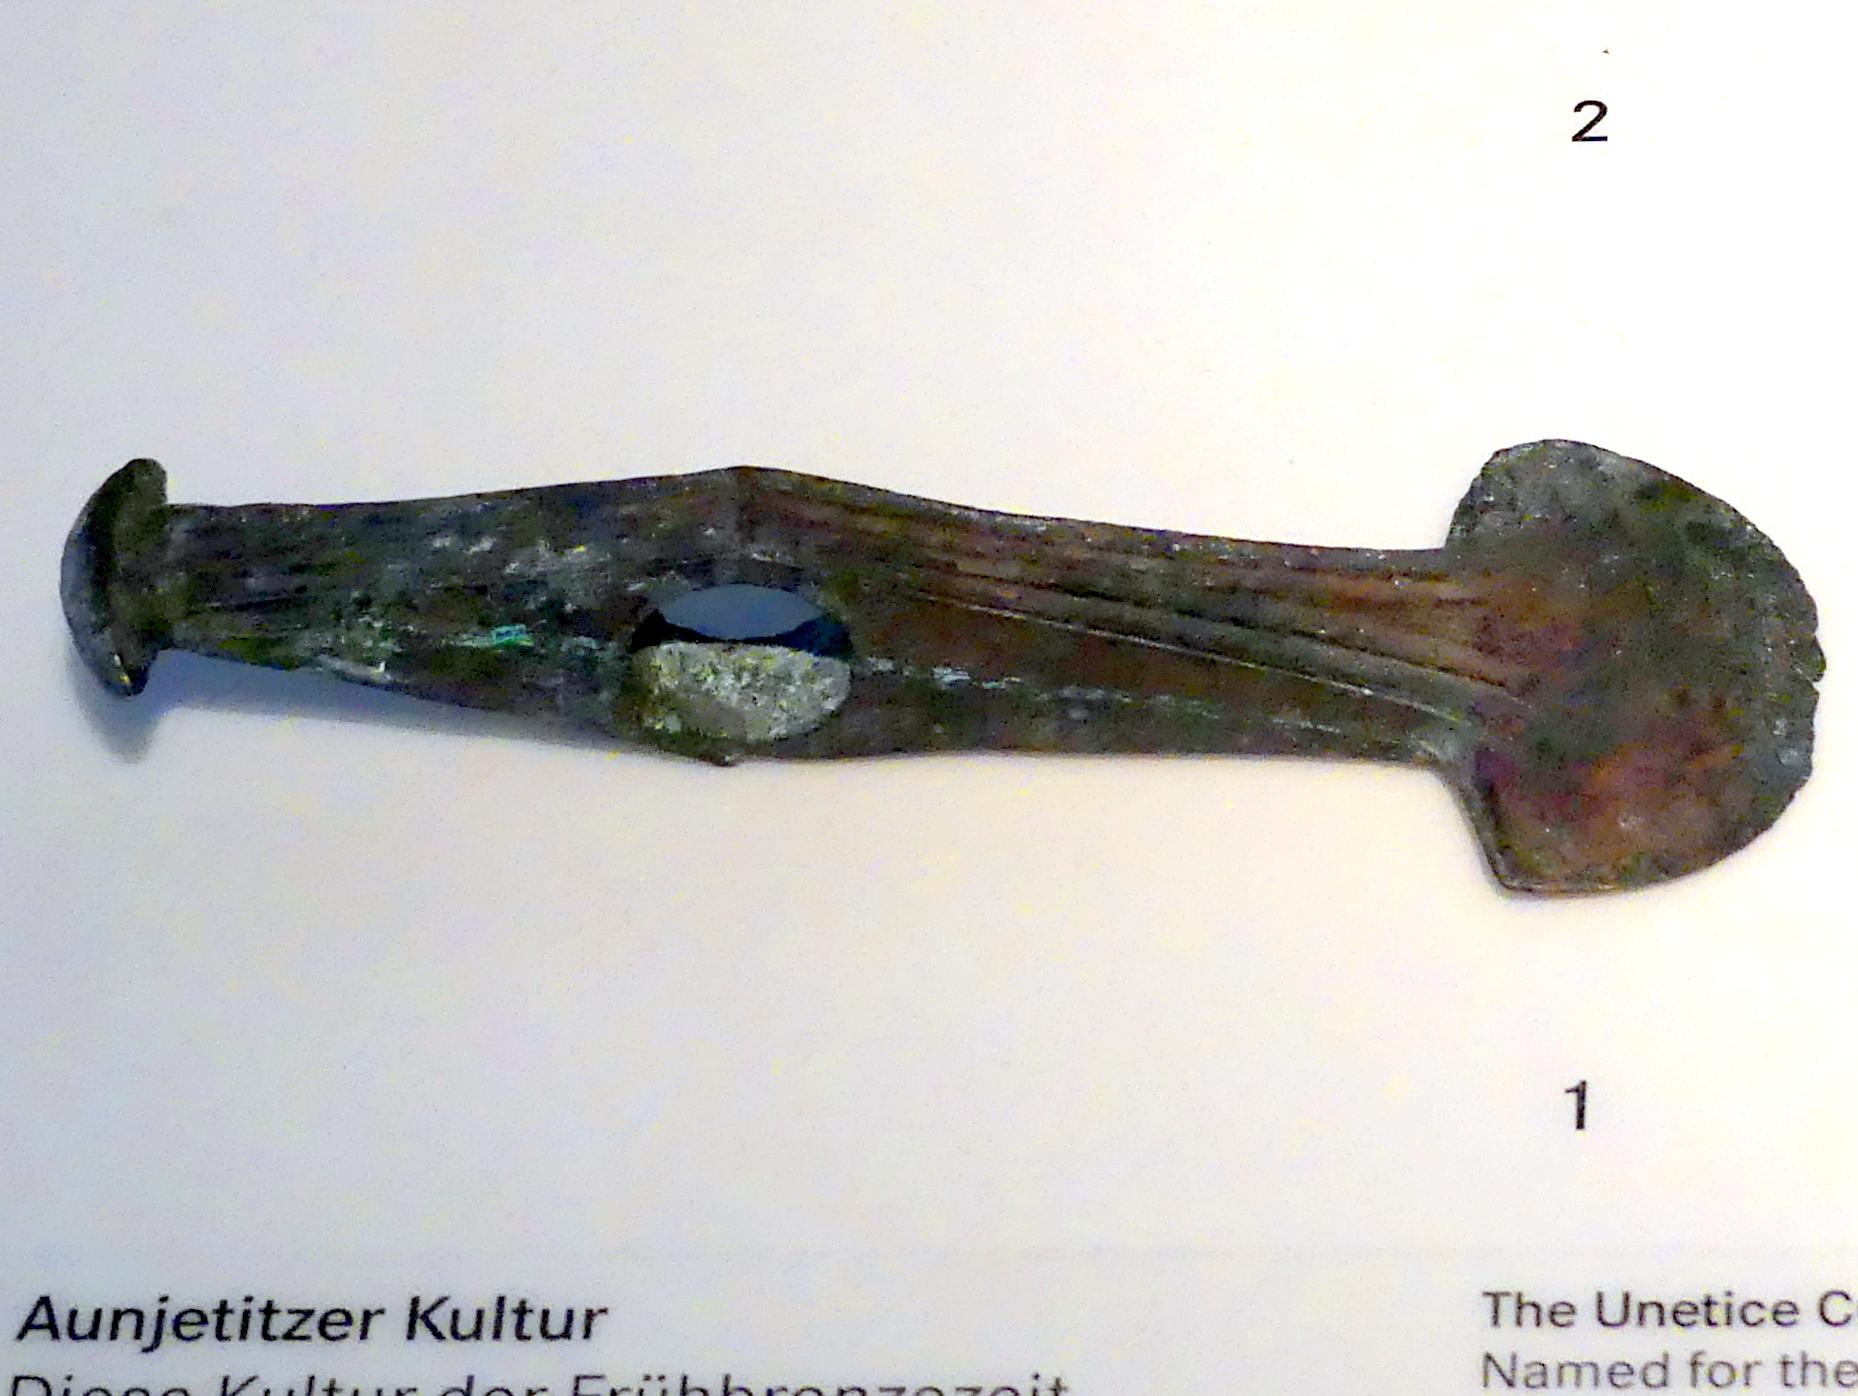 Prunkaxt, Frühe Bronzezeit, 3365 - 1200 v. Chr., 2200 - 1500 v. Chr., Bild 1/2